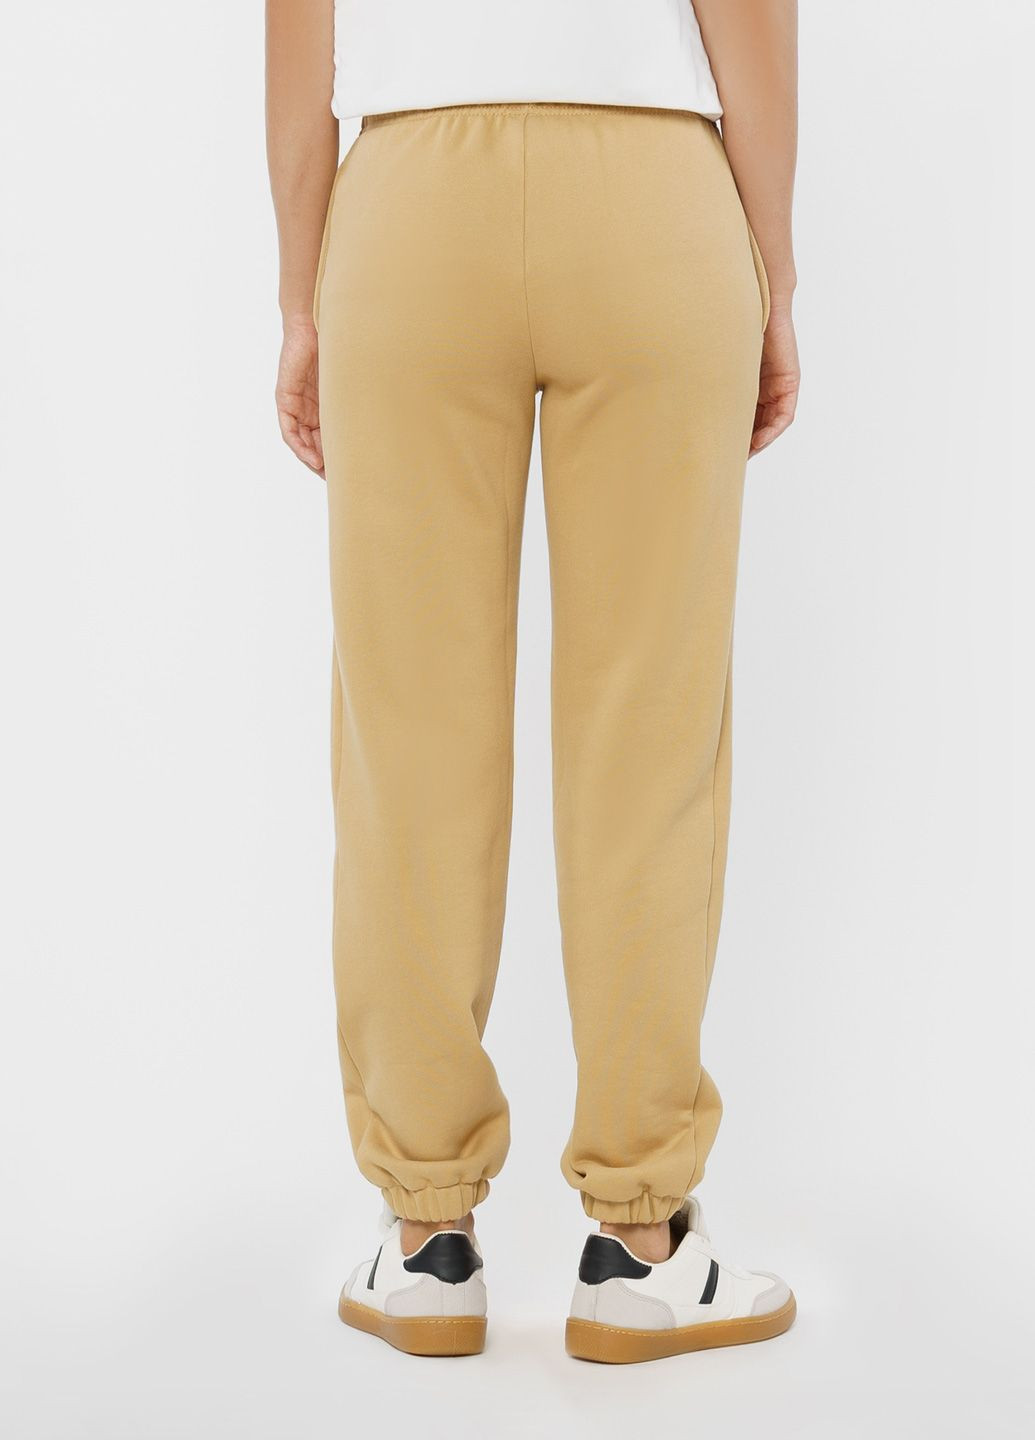 Спортивні штани жіночі Freedom бежеві Arber sportpants w6 (280900046)